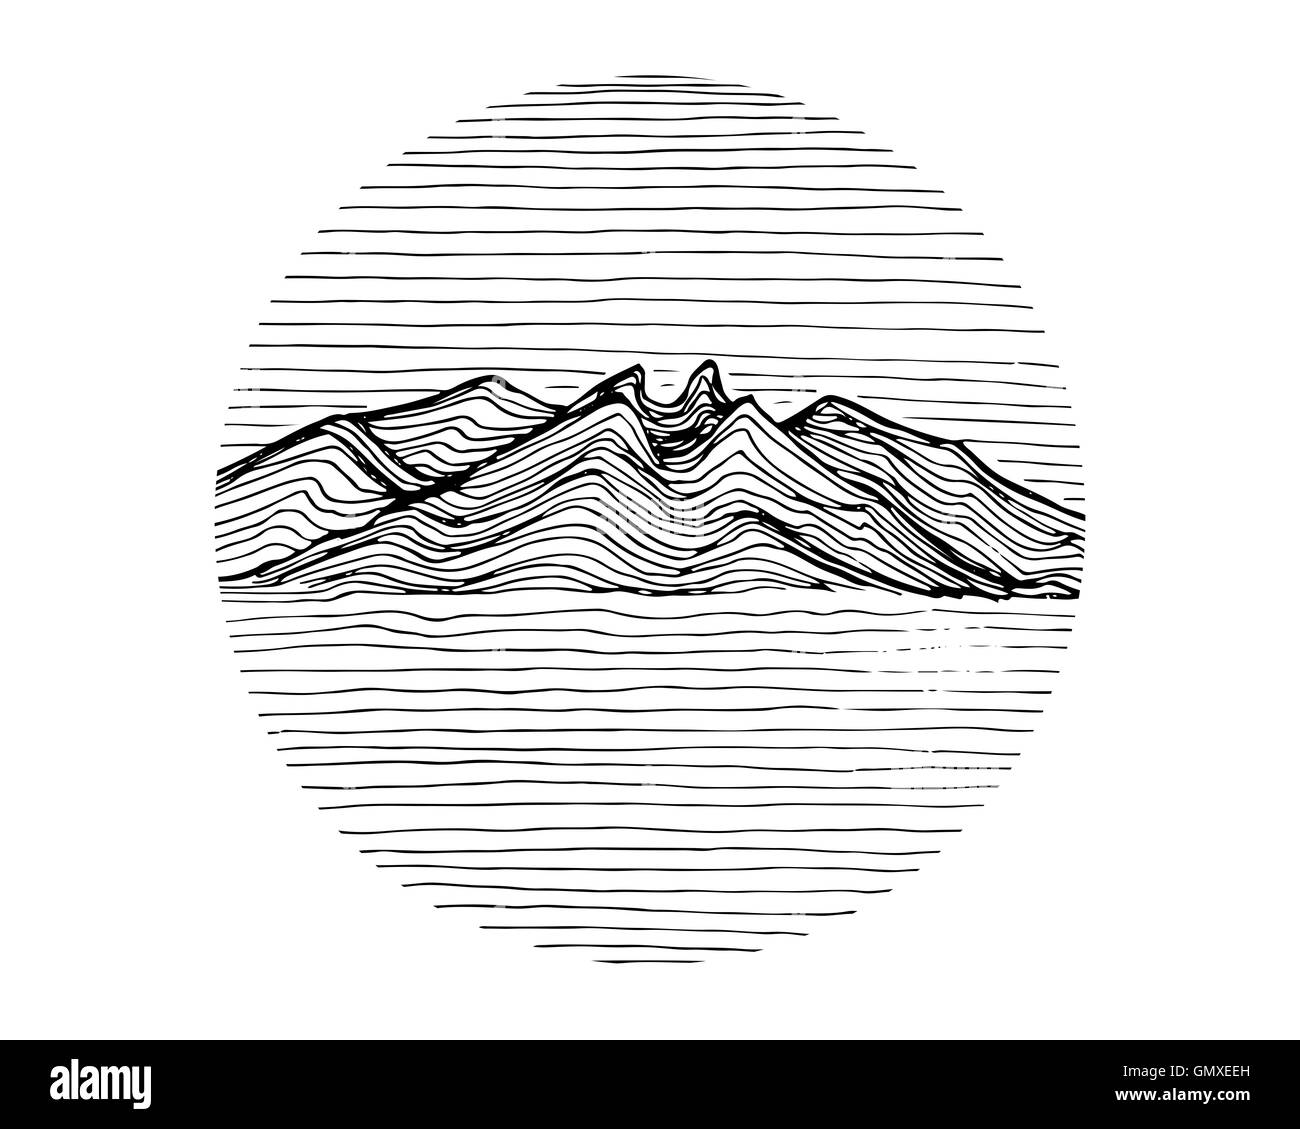 Disegnato a mano o illustrazione di disegno di un lineare forma di montagna Foto Stock